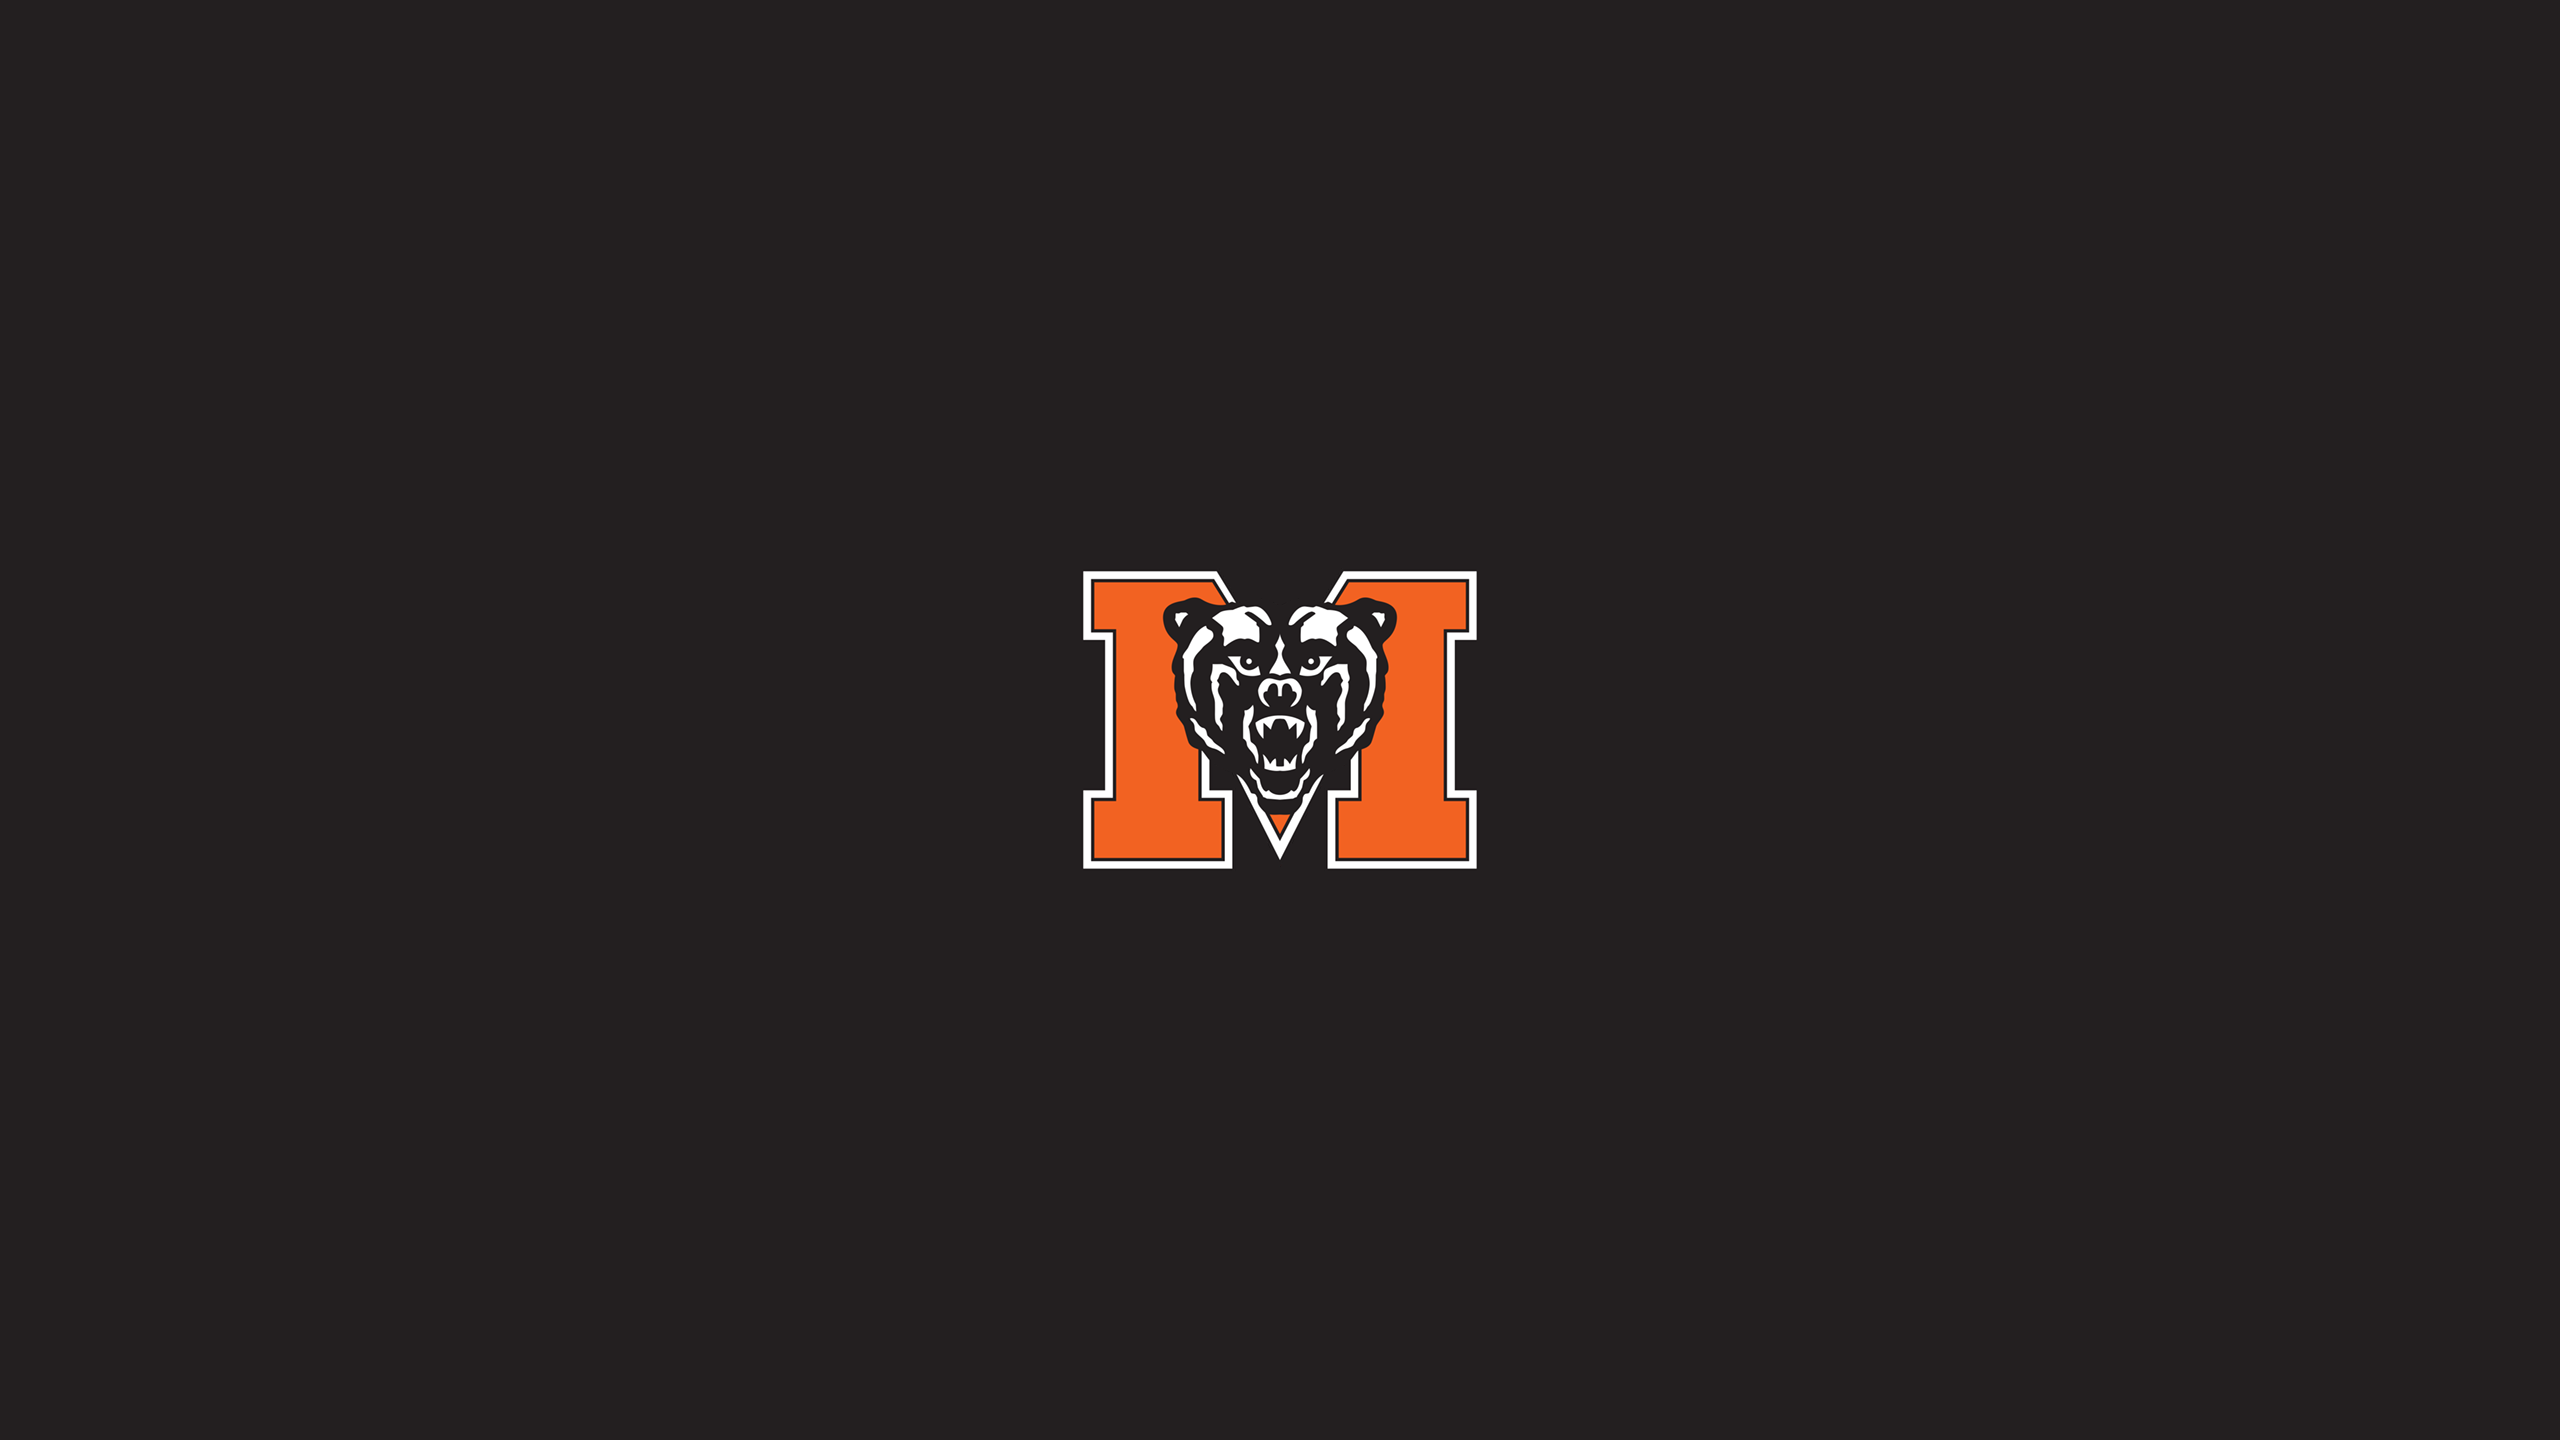 Mercer Bears Basketball - NCAAB - Square Bettor